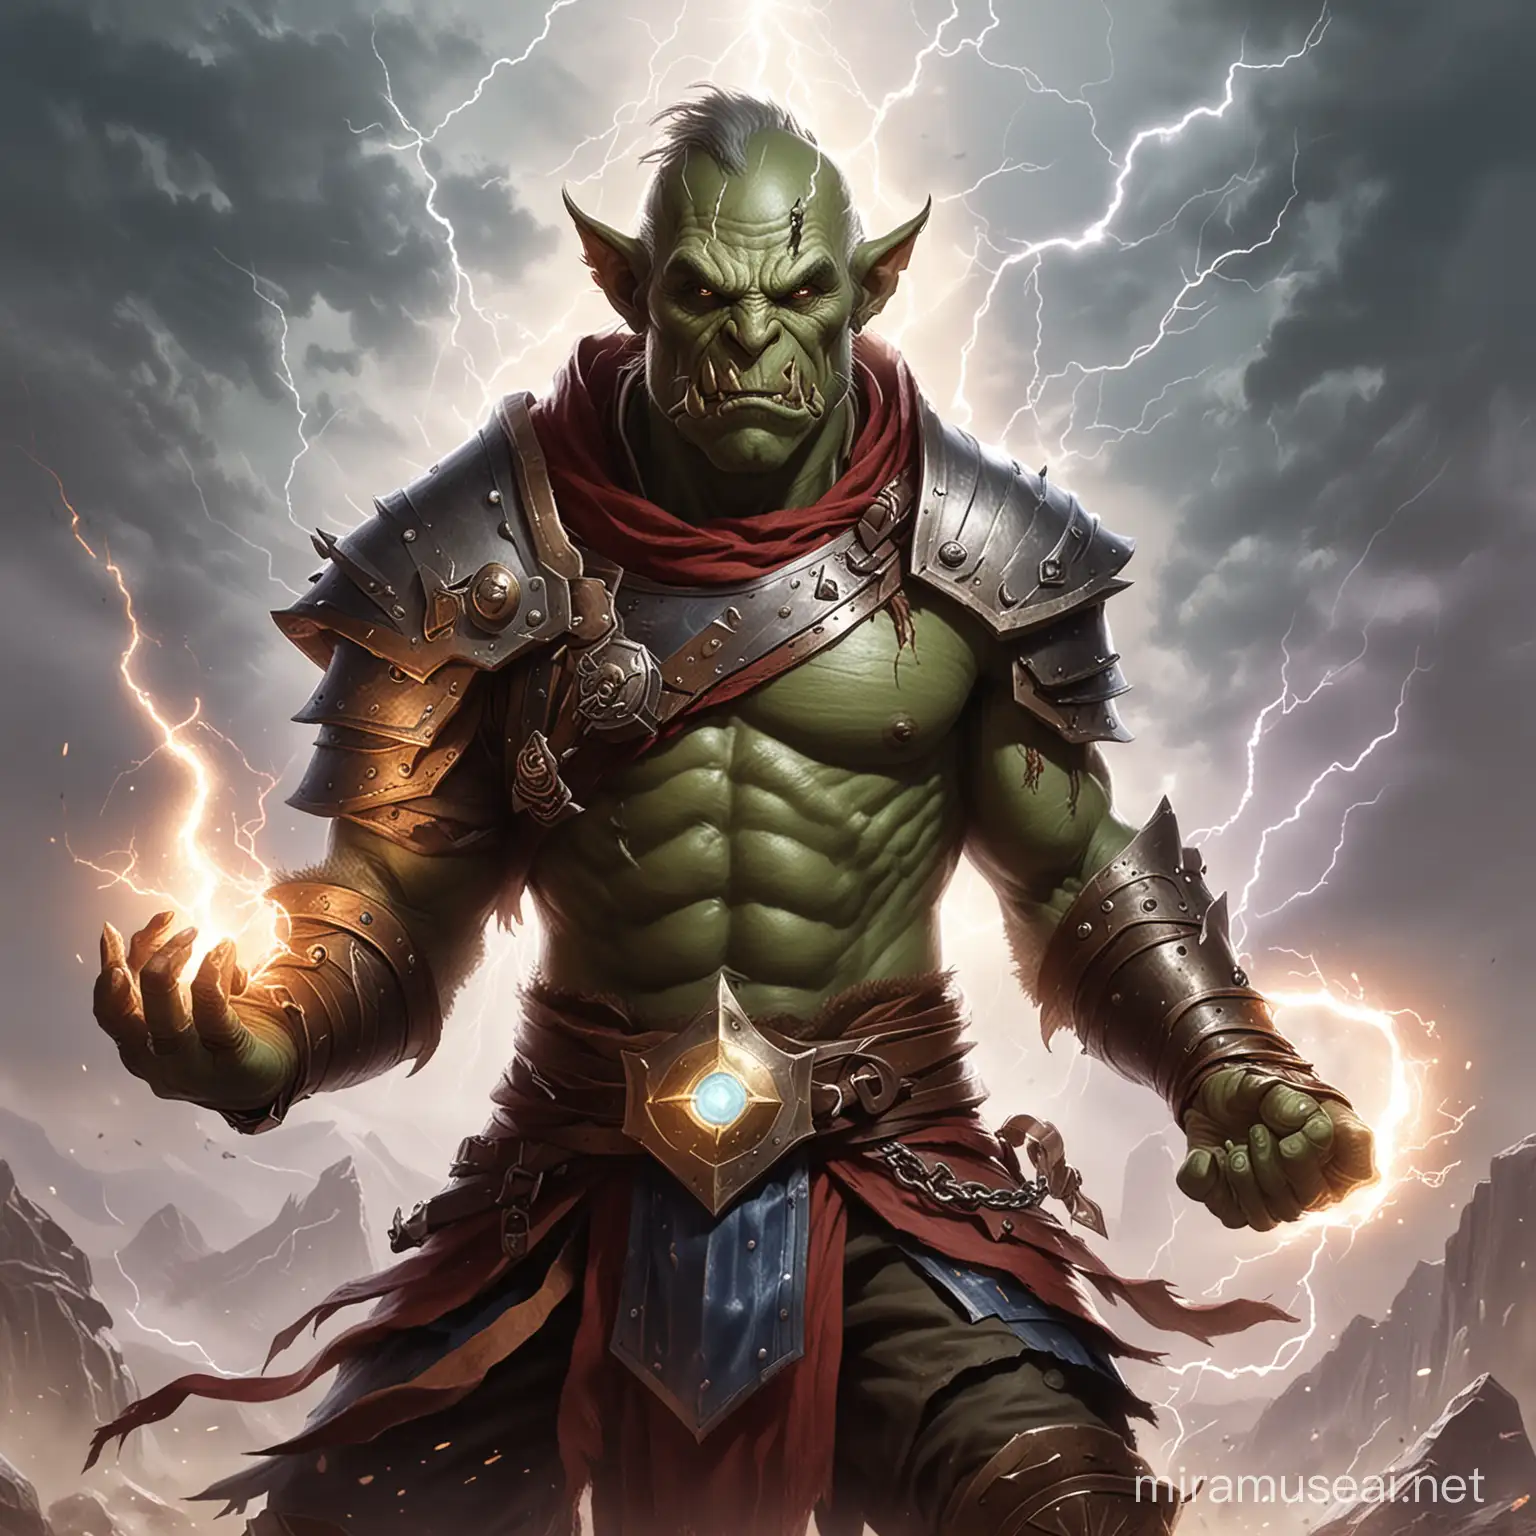 Orc Spellcaster Token Follower of Talos Conjuring Lightning